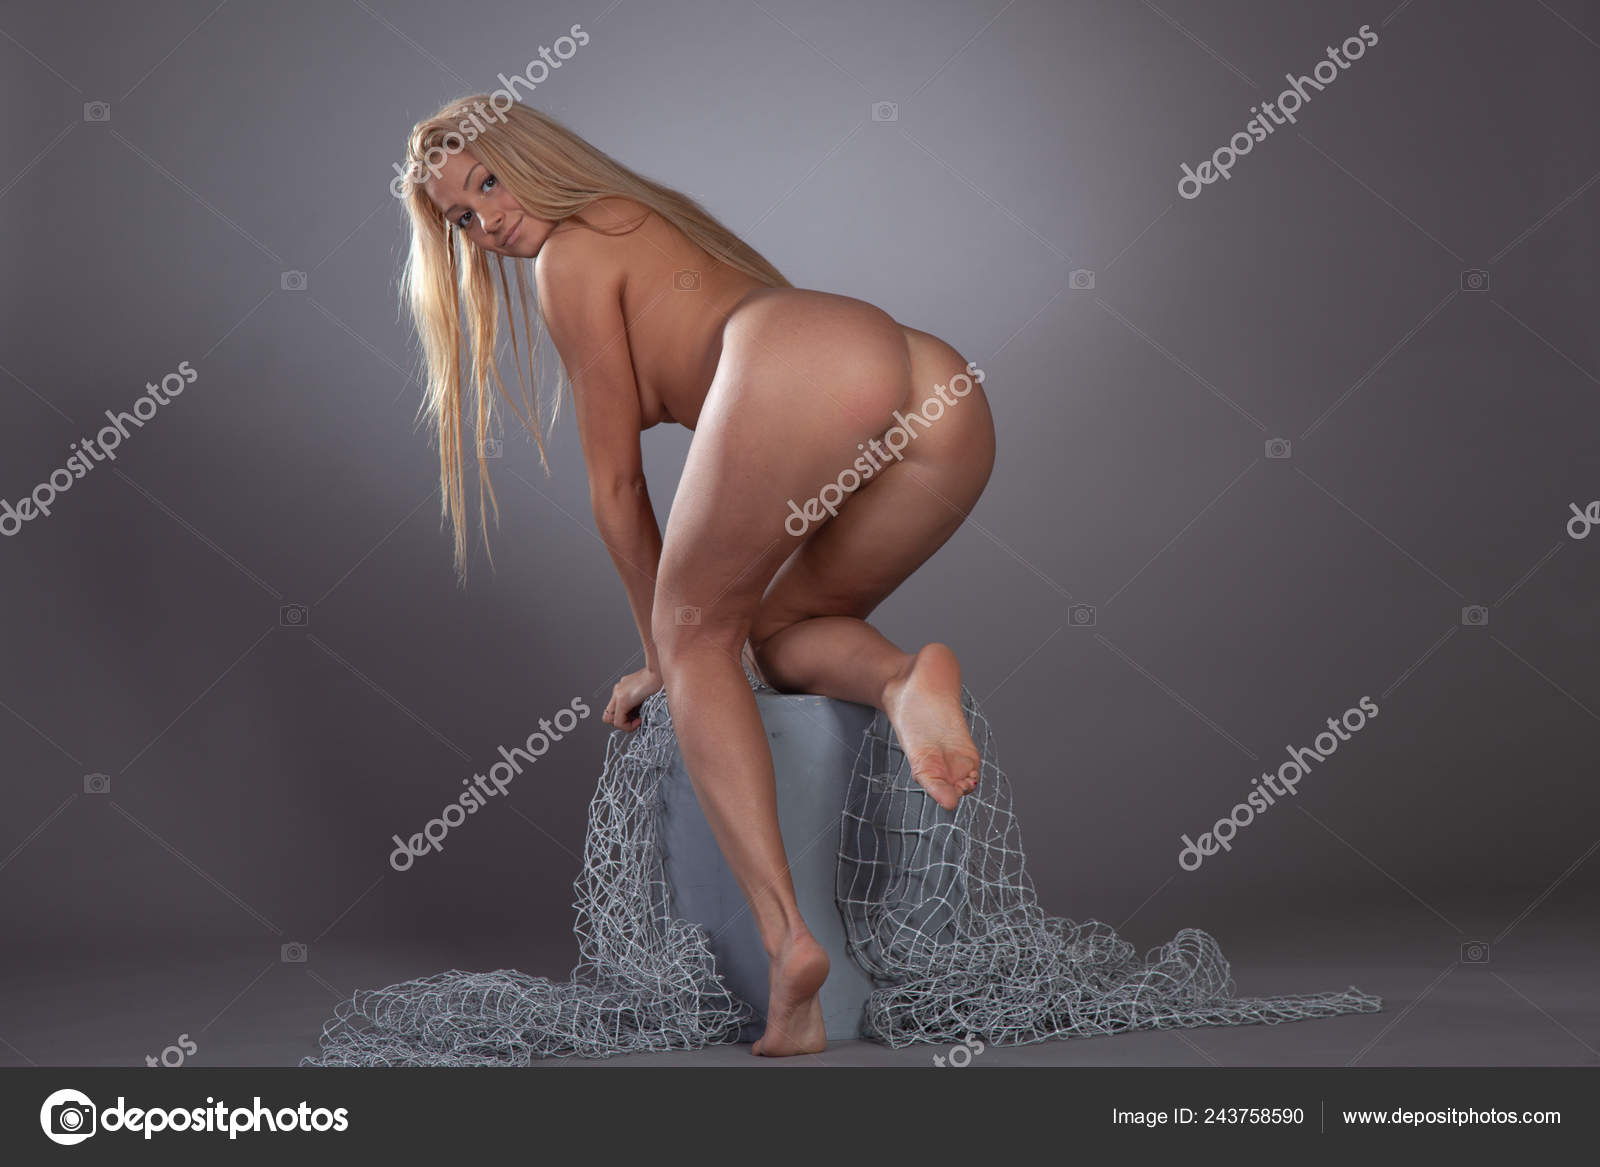 https://st4n.depositphotos.com/10086424/24375/i/1600/depositphotos_243758590-stock-photo-young-beautiful-girl-posing-nude.jpg